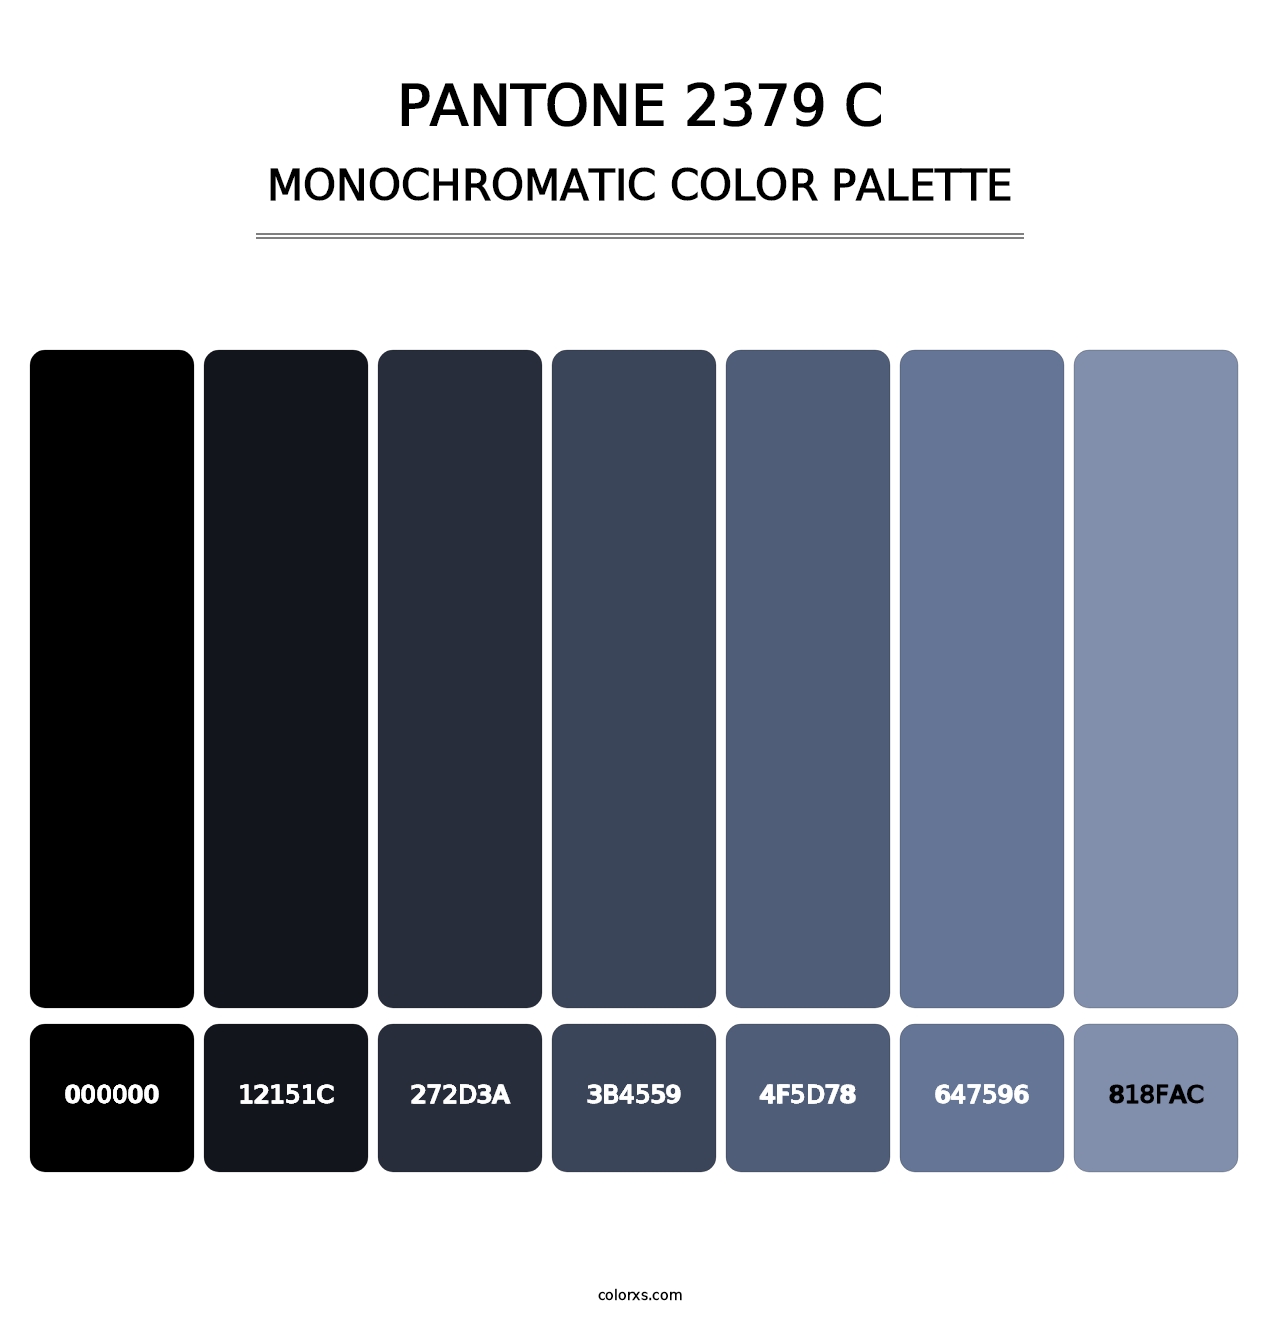 PANTONE 2379 C - Monochromatic Color Palette